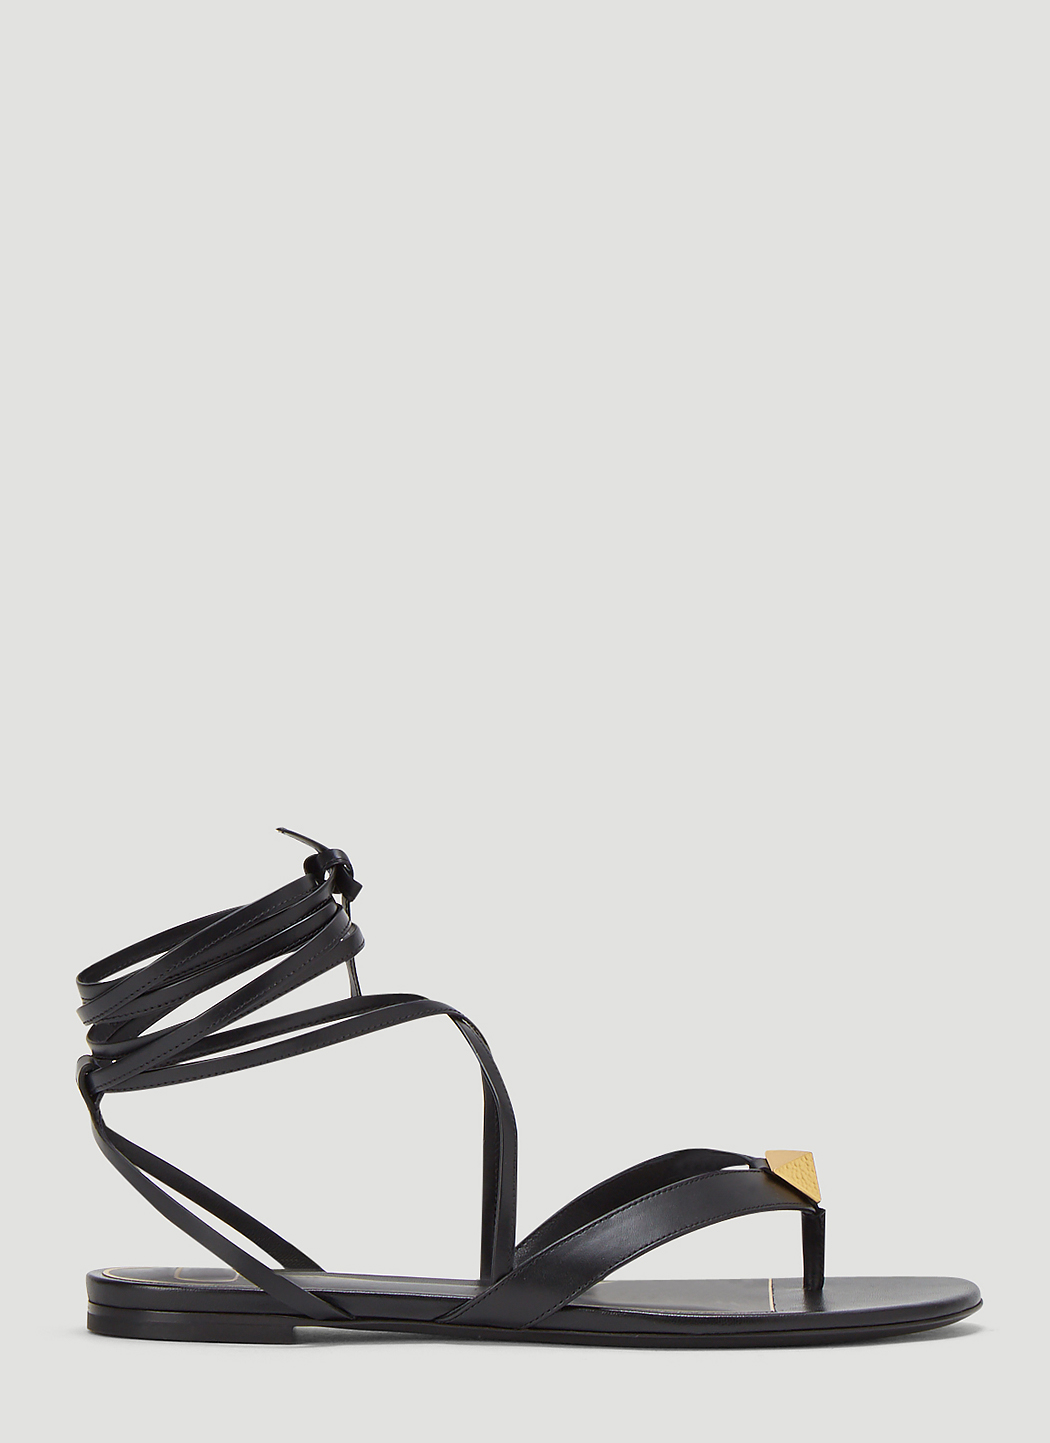 Valentino Roman Stud Sandals in Black | LN-CC